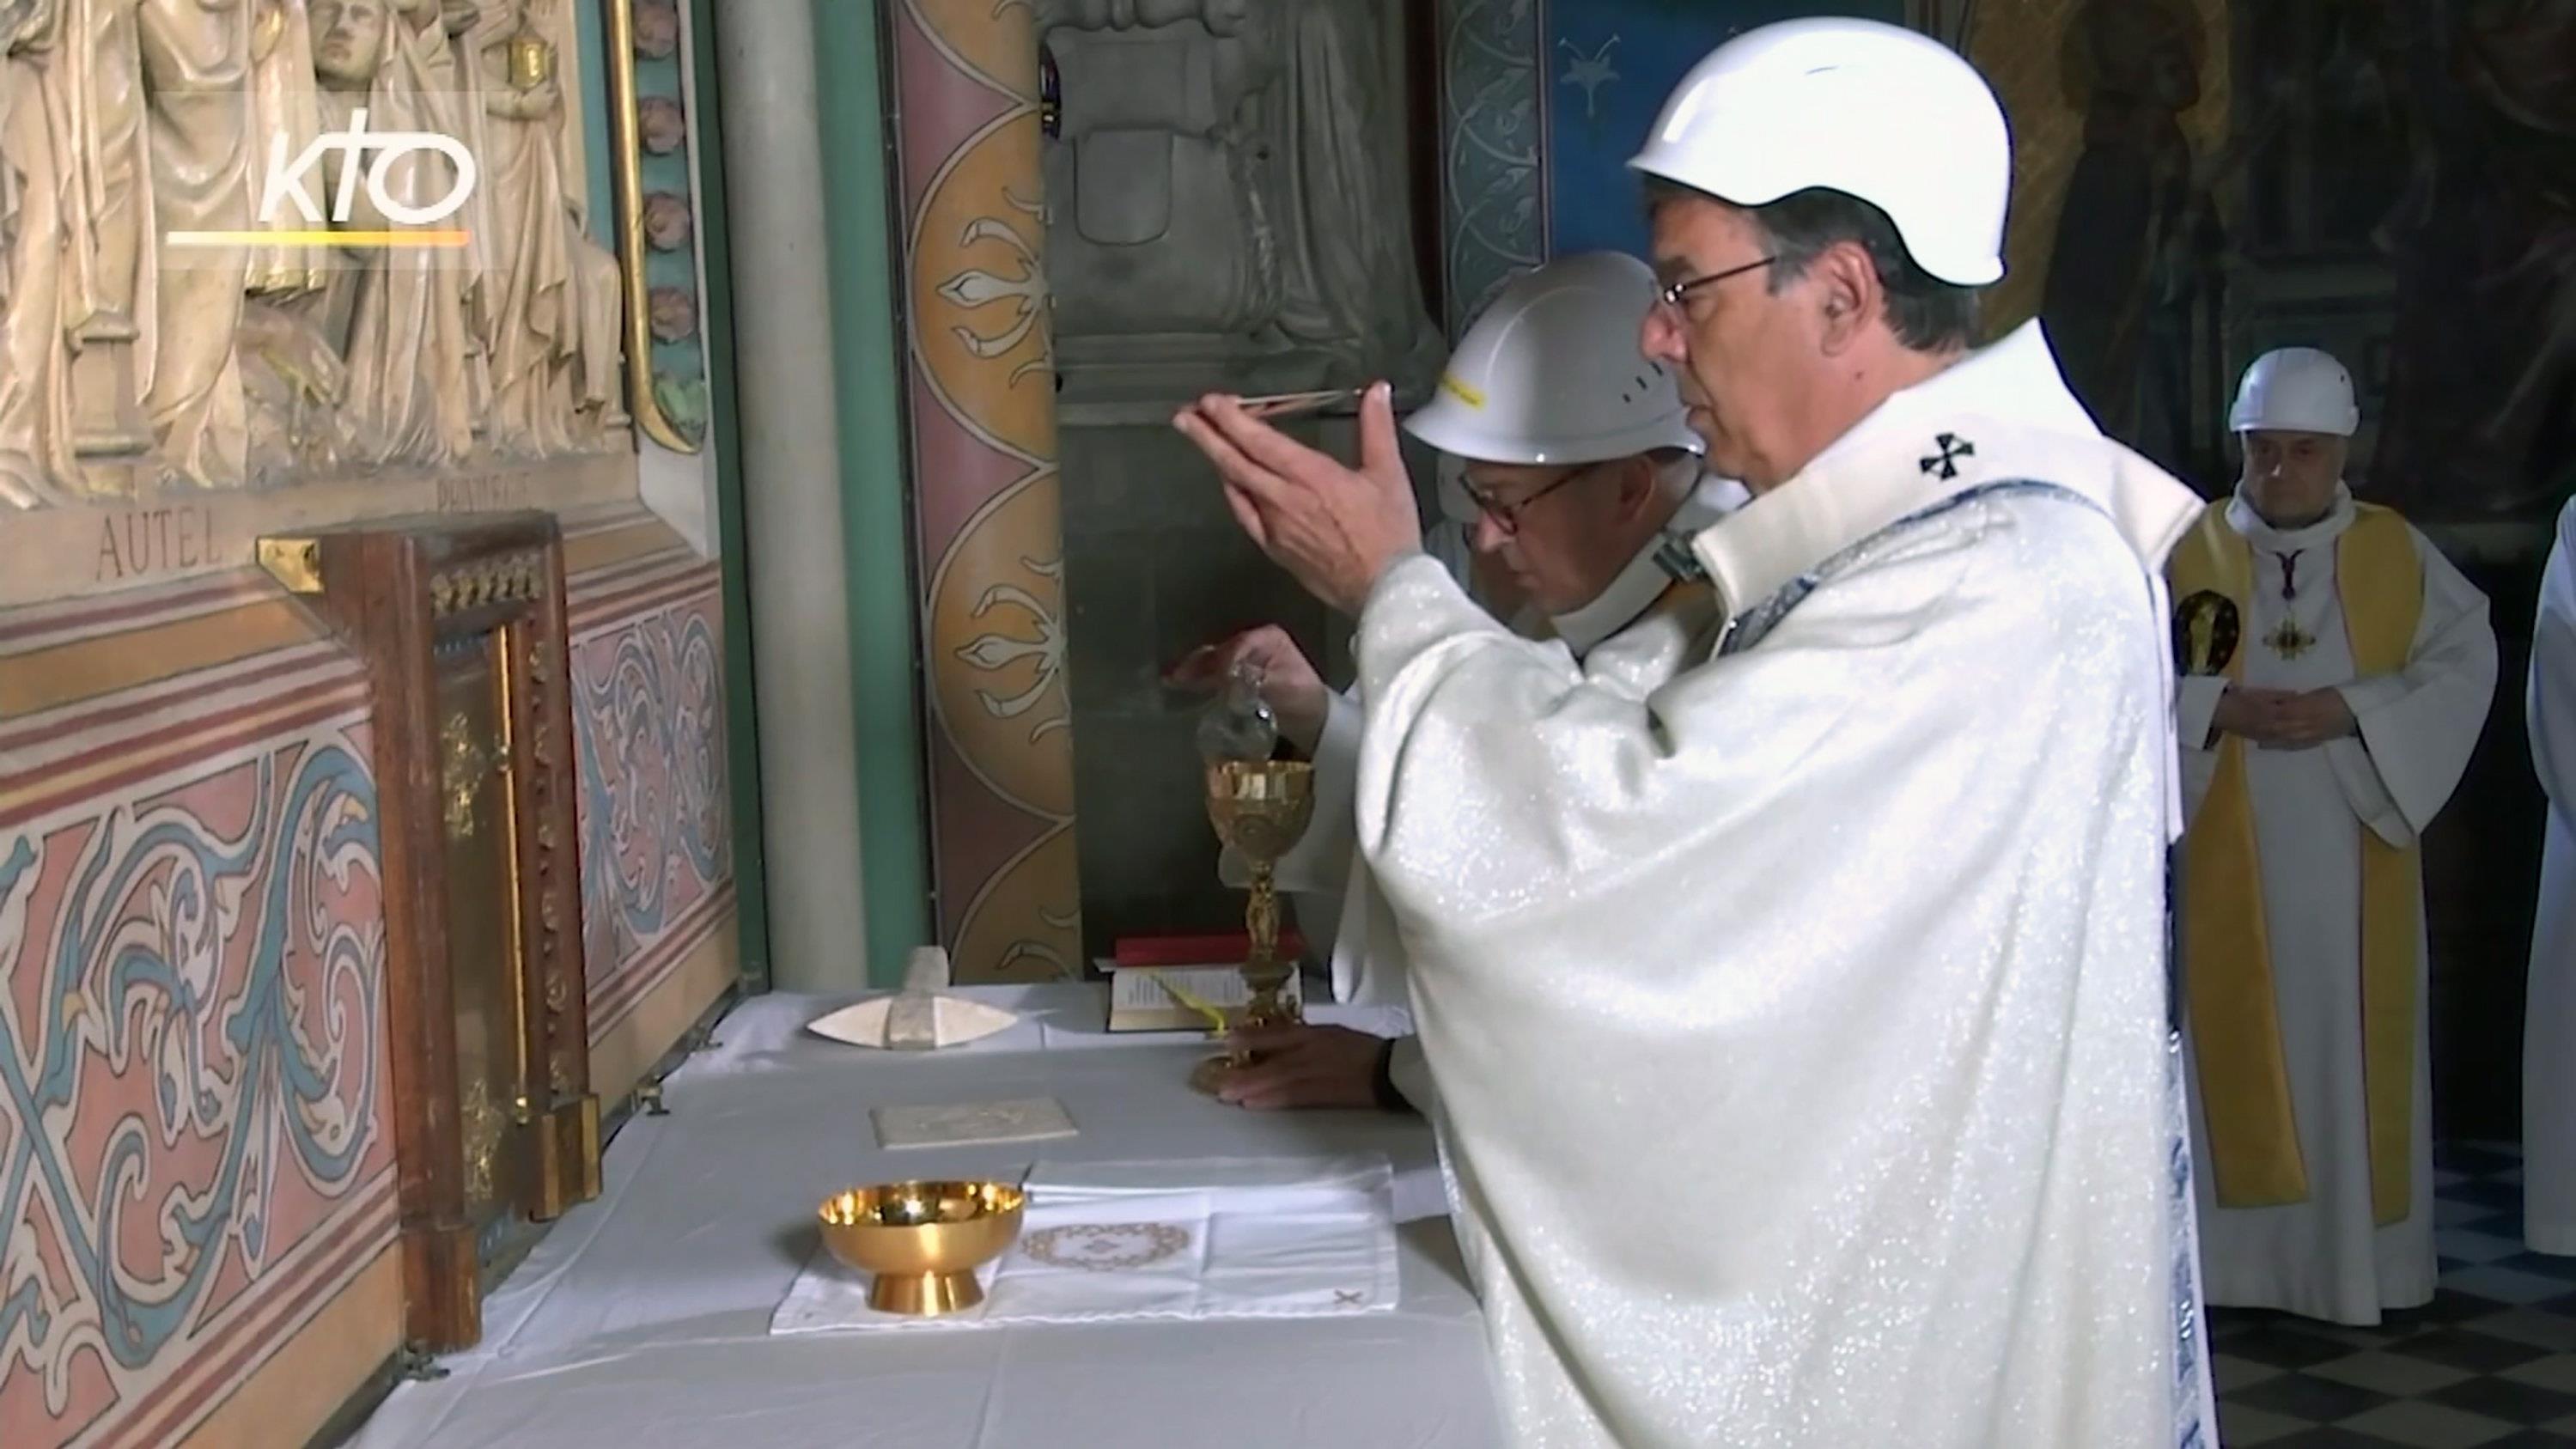 Messe solemnelle Mgr l'Archevesque Autel de Notre Dame de Paris Vue d'optique 